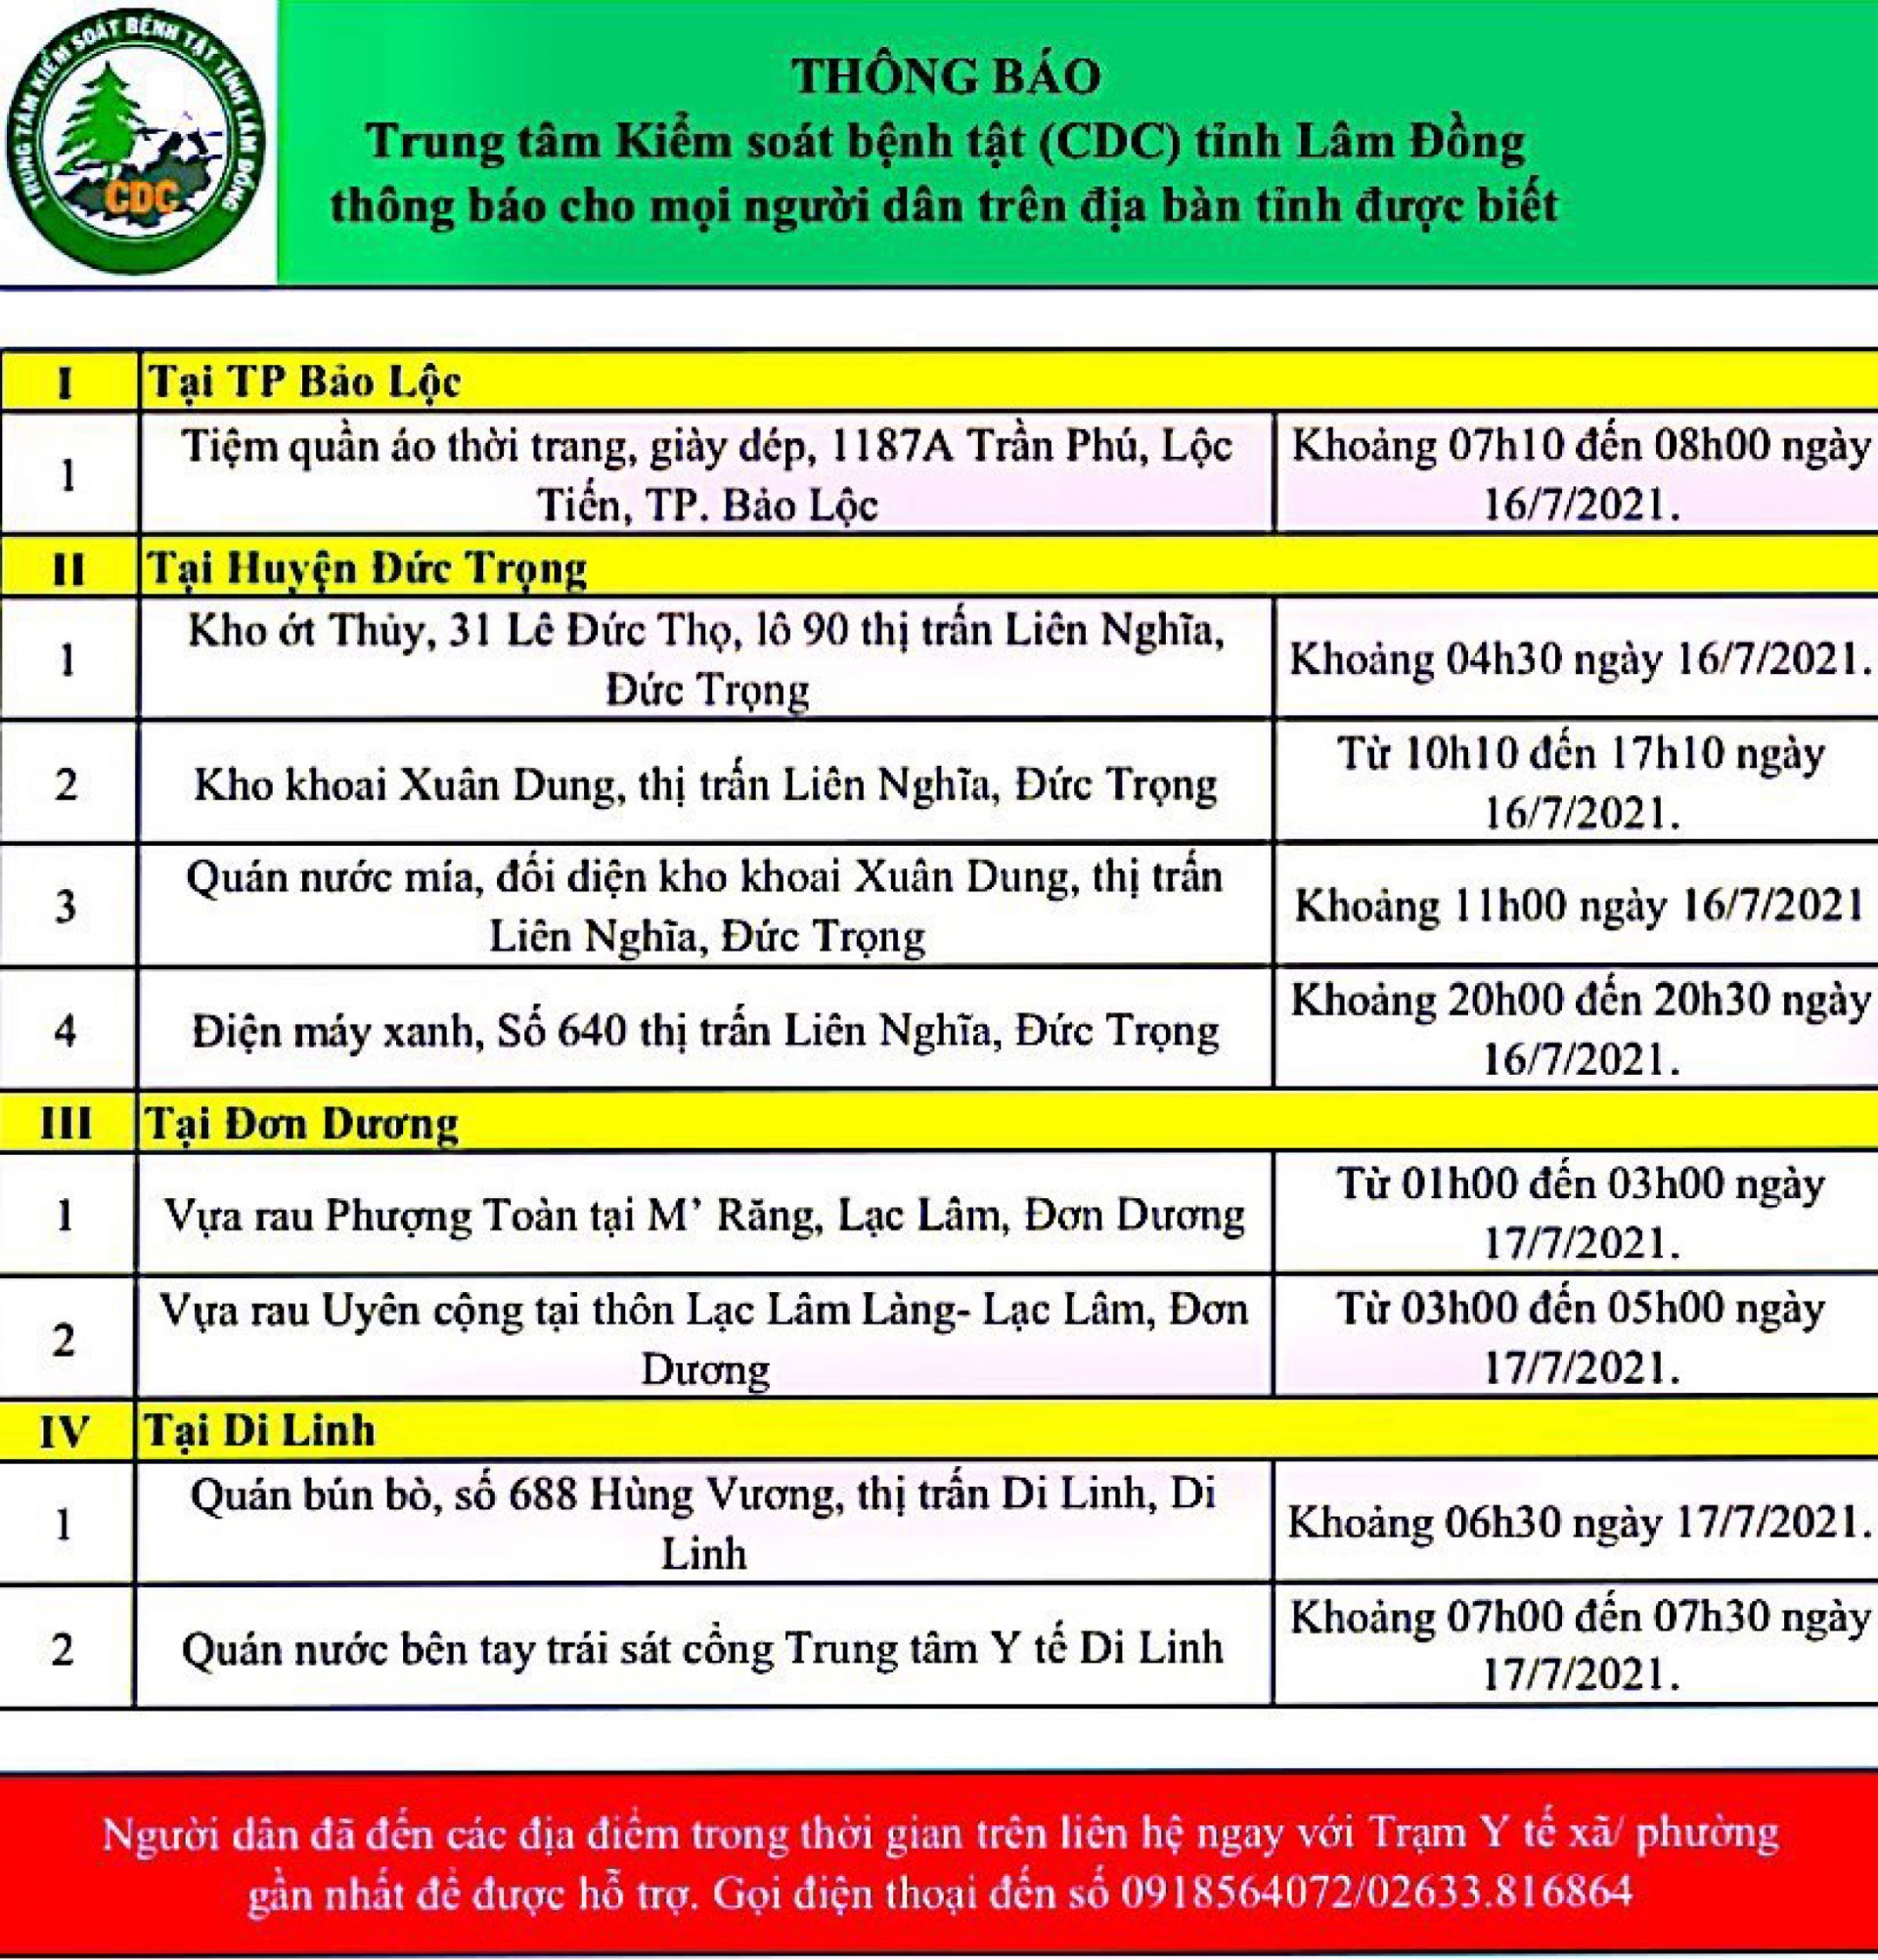 CDC tỉnh Lâm Đồng thông báo cho mọi người dân trên địa bàn tỉnh (cập nhật ngày 18/07/2021)